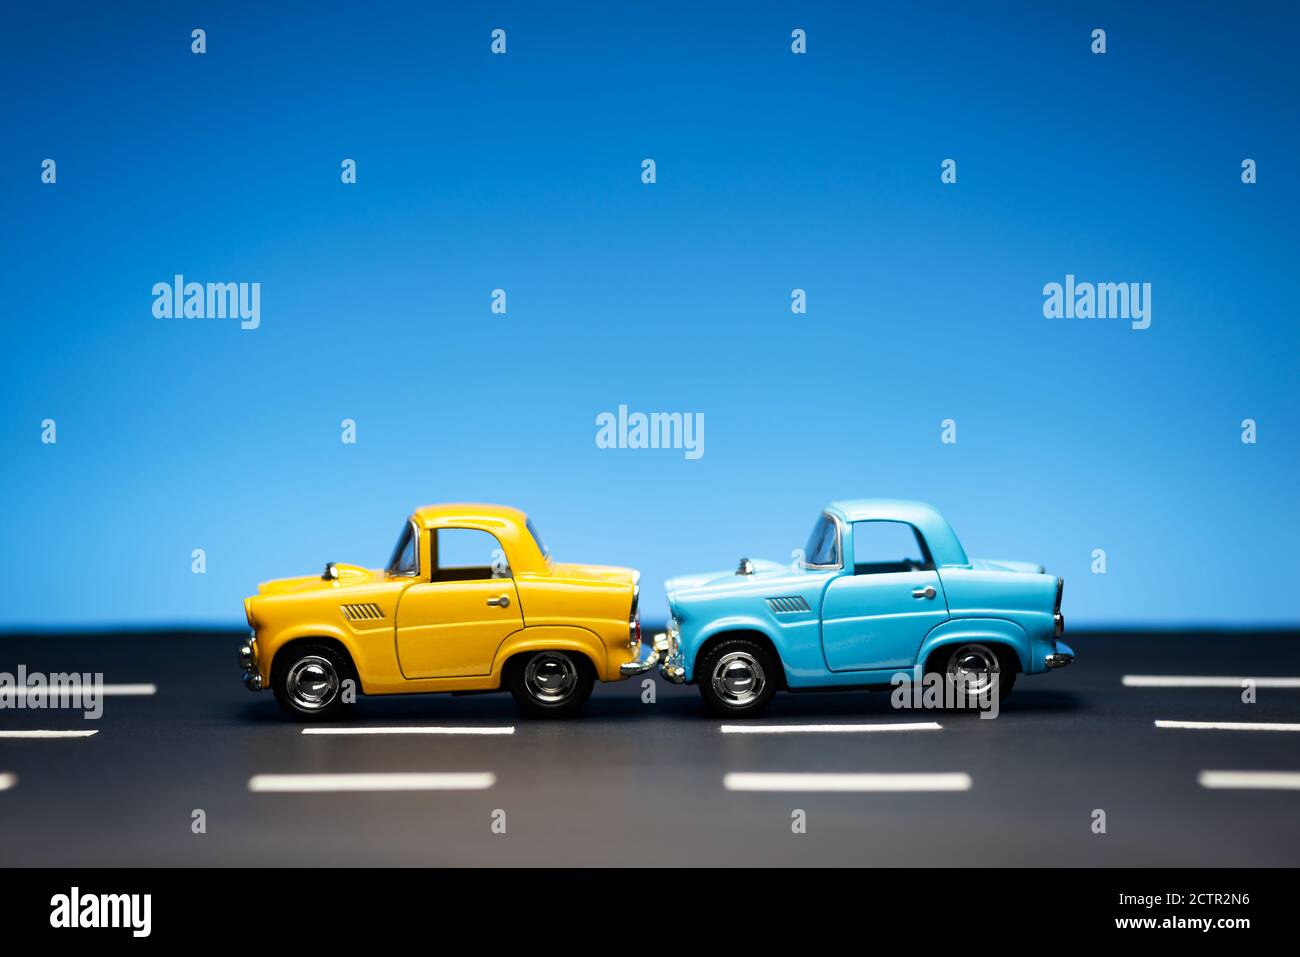 Deux vieux modèles de voitures des années 50, un jaune et un bleu, se tiennent sur une route et sur un fond bleu. Banque D'Images